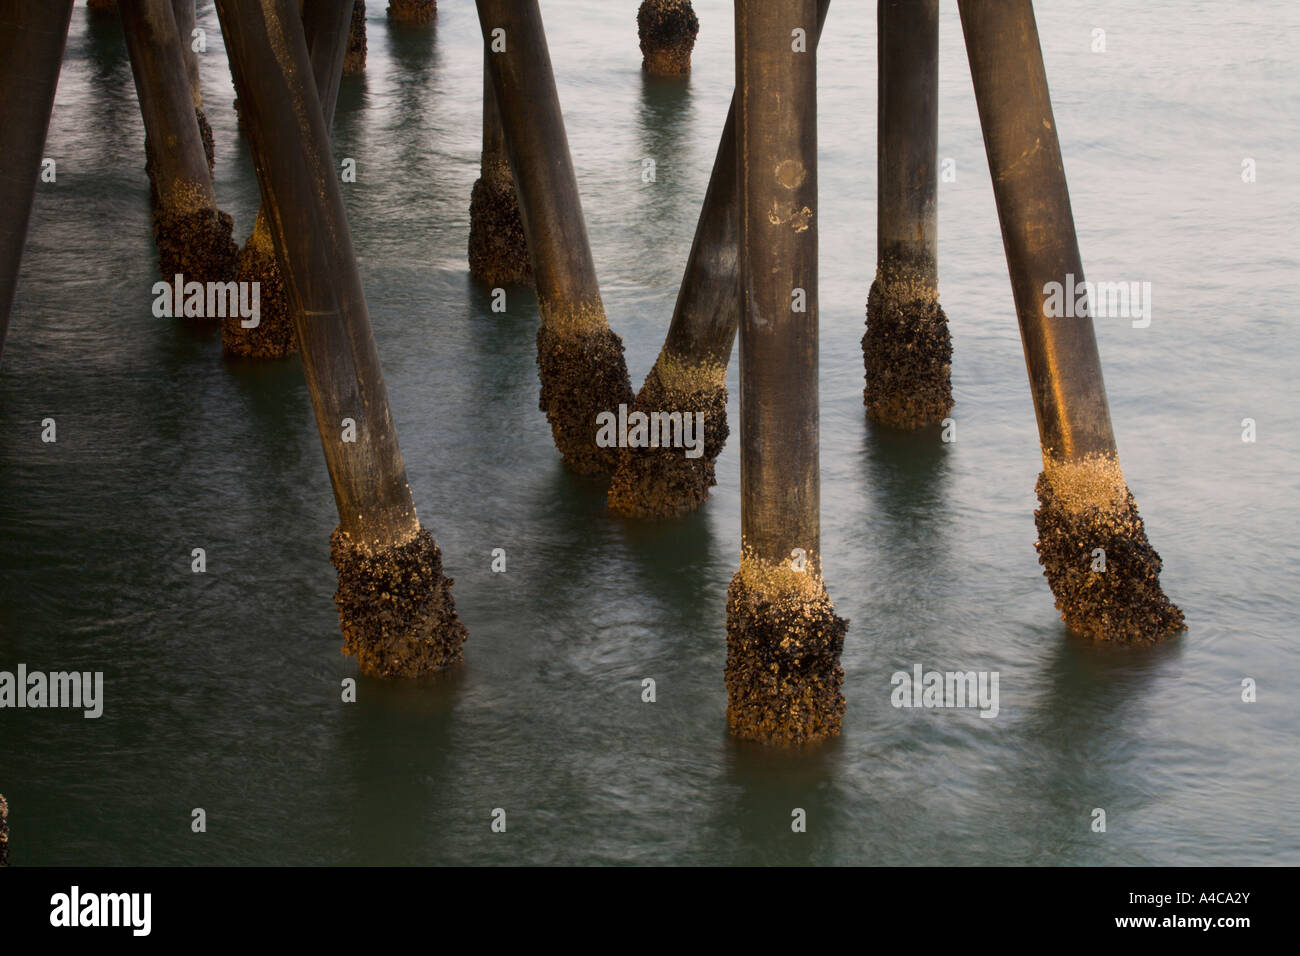 Seepocken auf die stützen von der Santa Monica Pier Los Angeles County California Vereinigte Staaten von Amerika Stockfoto